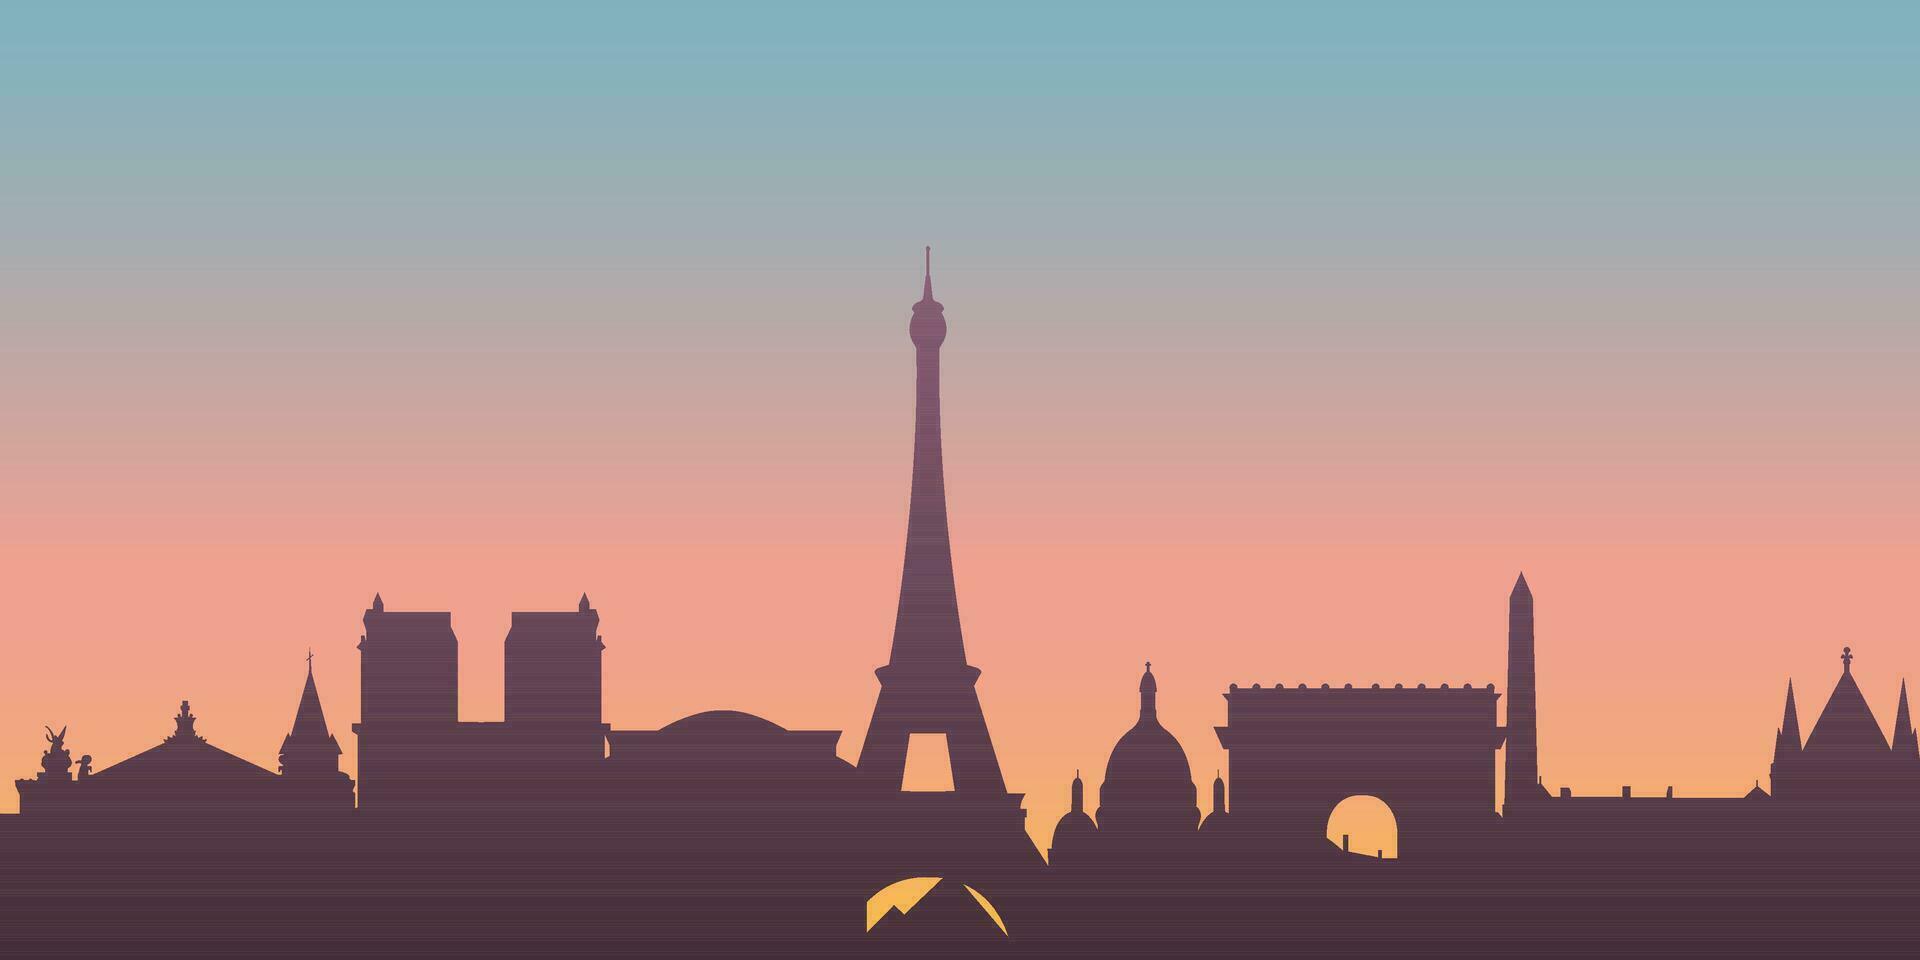 Paris ville ligne d'horizon. silhouette ville Paris France Contexte. vecteur illustration